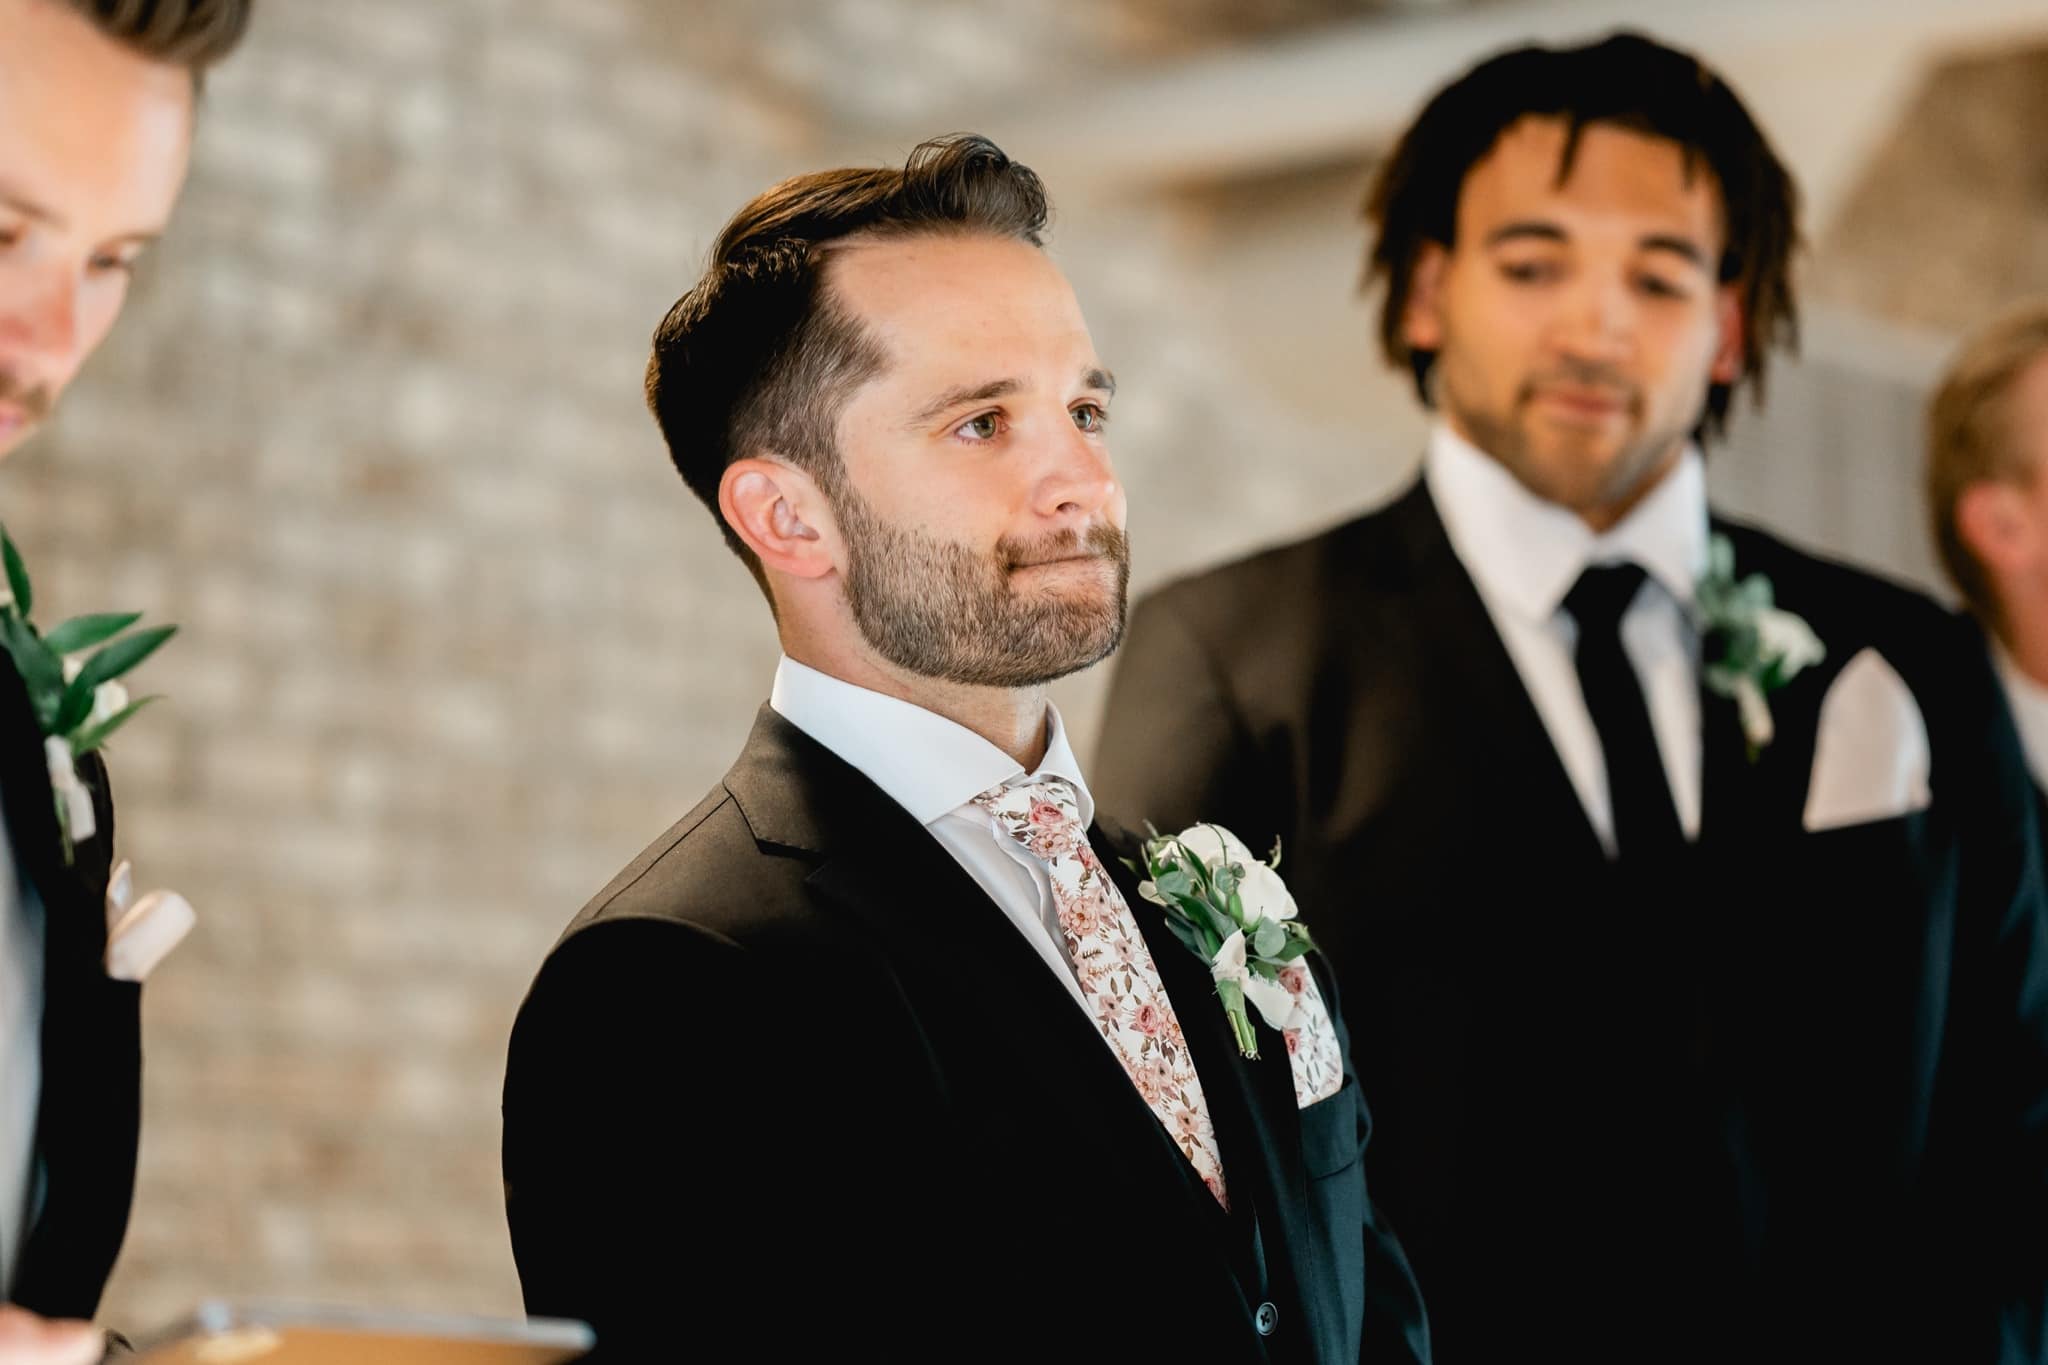 groom emotional as bride walks down aisle